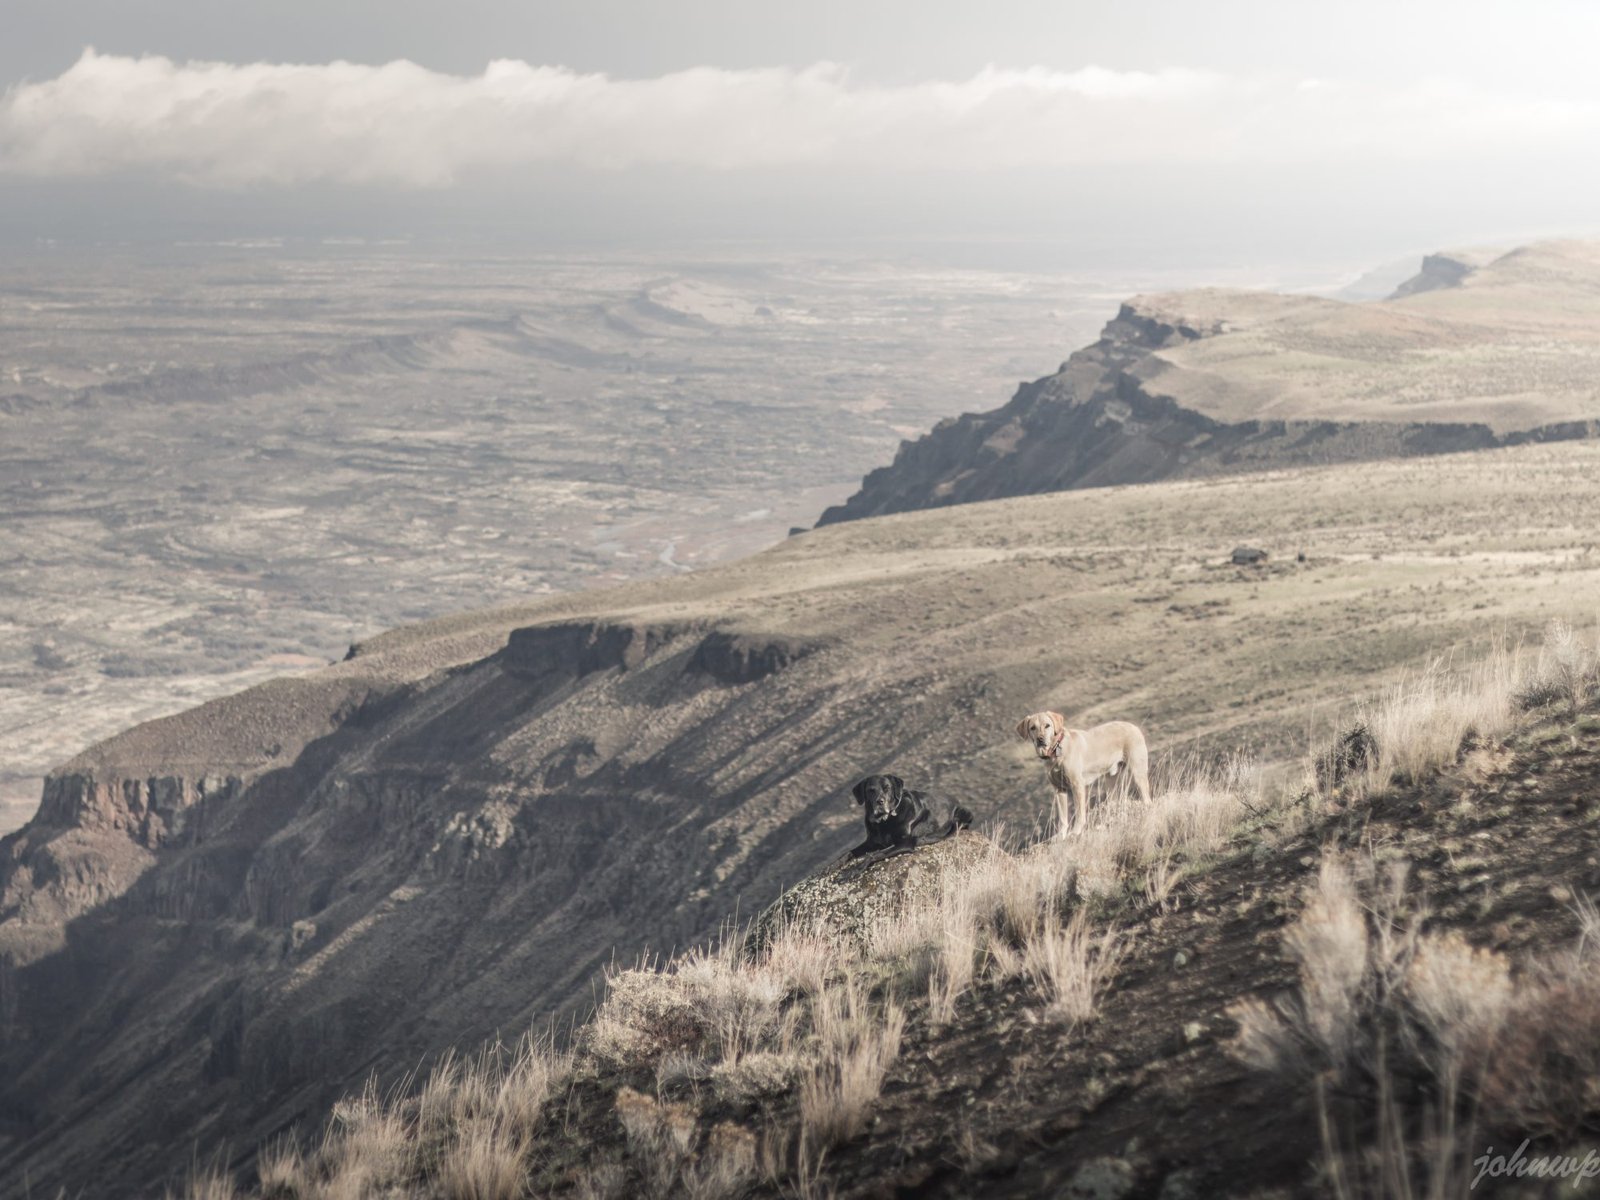 Summit dogs on Sentinel Mountain